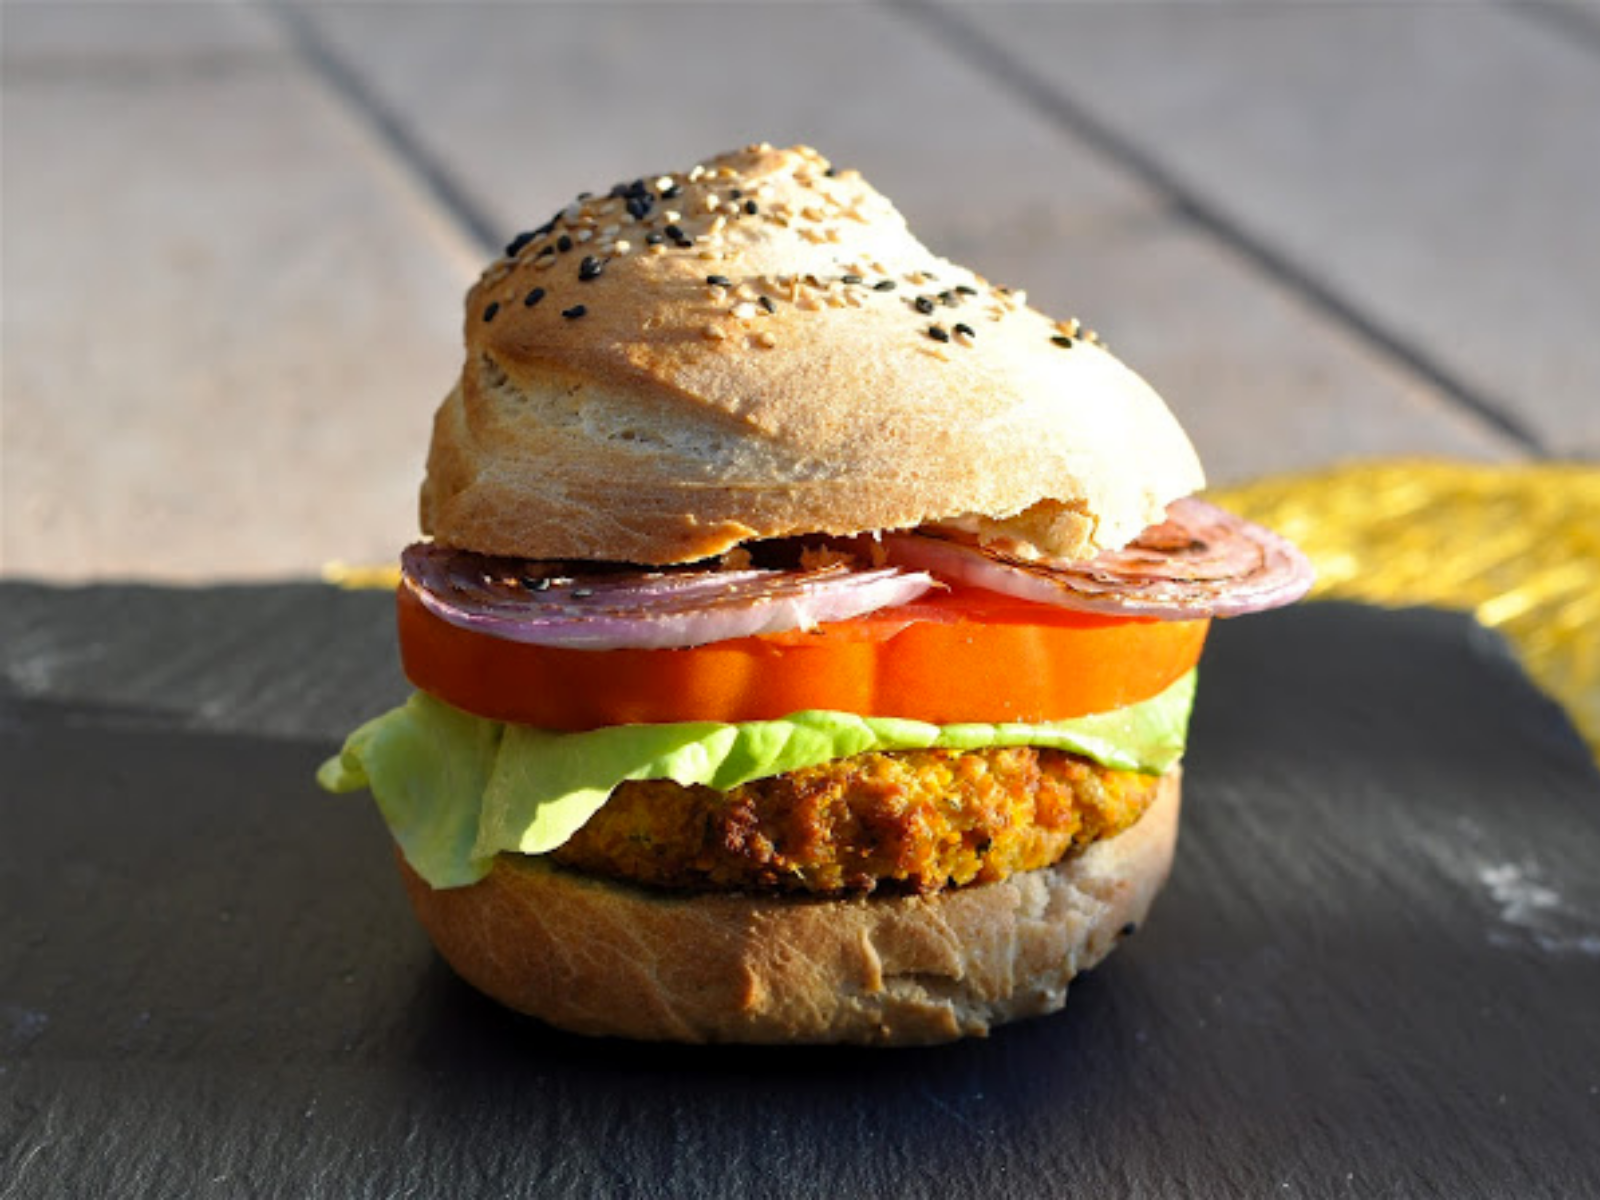 Homemade vegan burger and bun